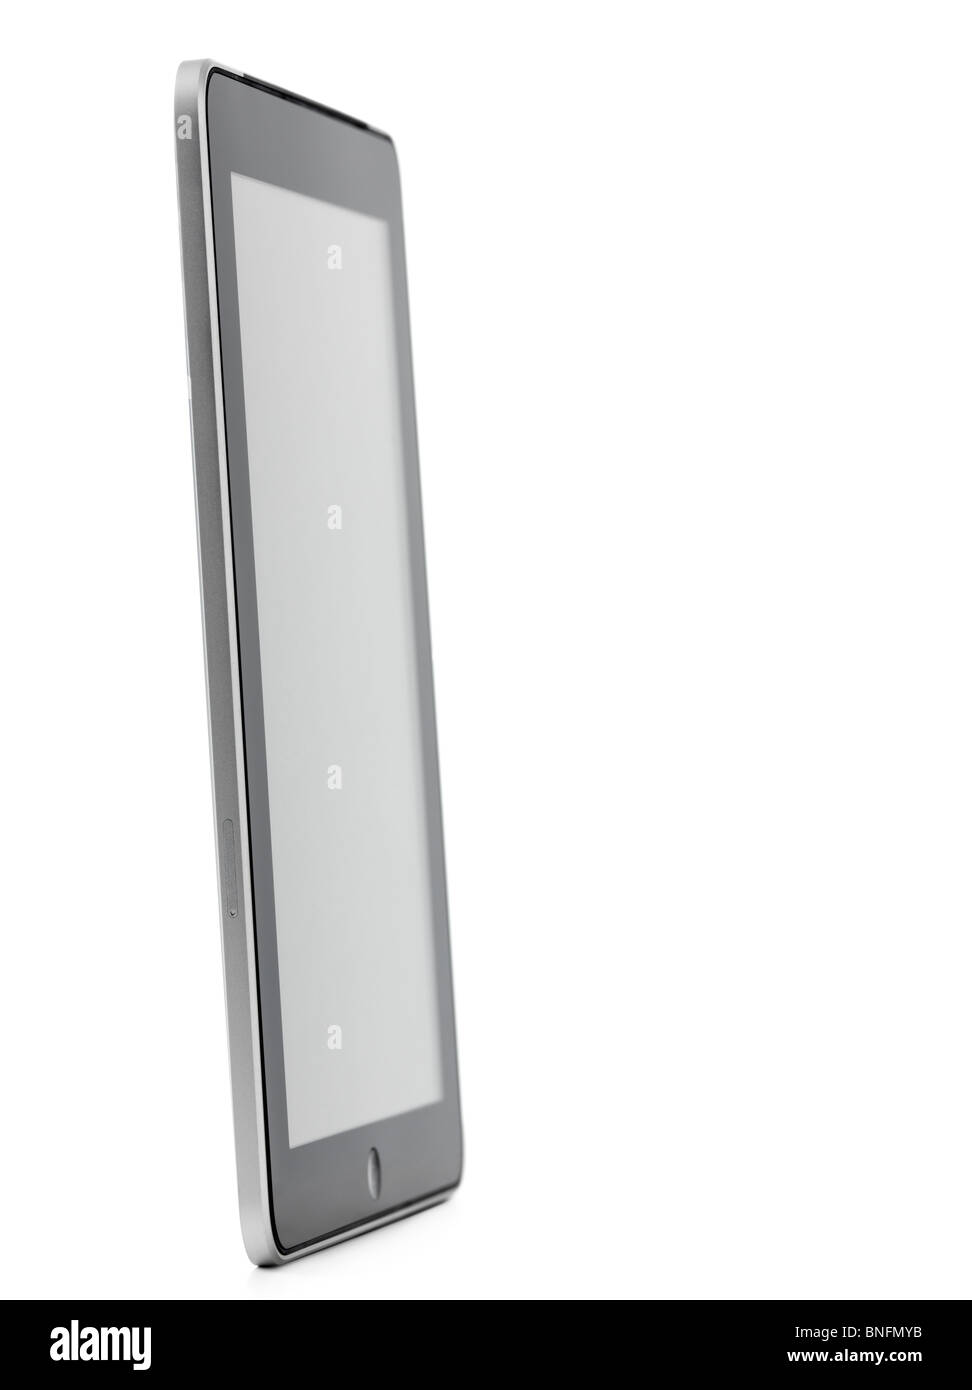 Apple iPad 3G tablet in piedi in un angolo isolato su sfondo bianco con tracciato di ritaglio Foto Stock